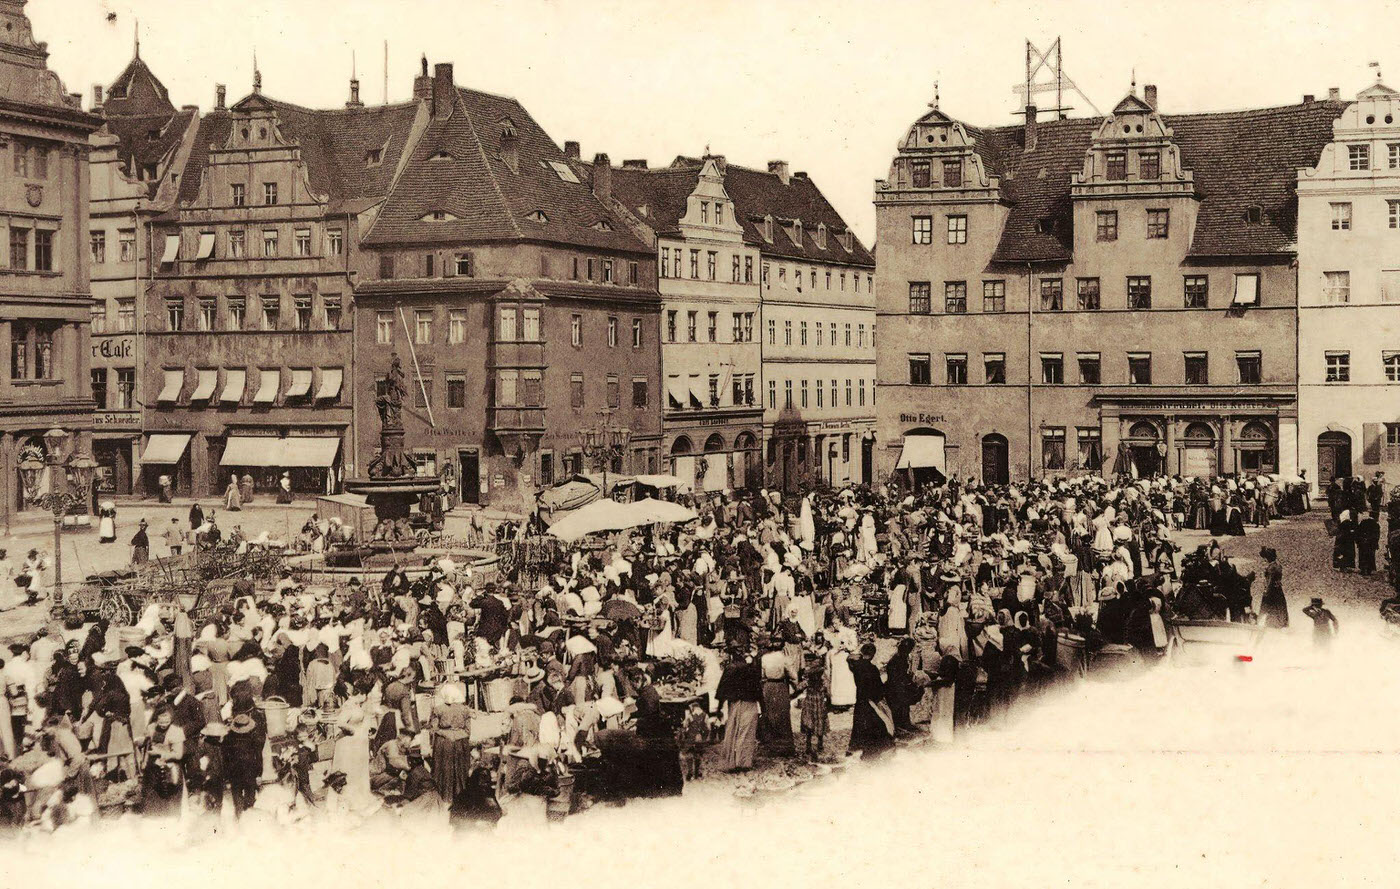 Markets in Saxony, Water wells, Market squares in Landkreis Nordsachsen, Markt (Torgau), Landkreis Nordsachsen, Torgau, Marktplatz, Germany, 1901.